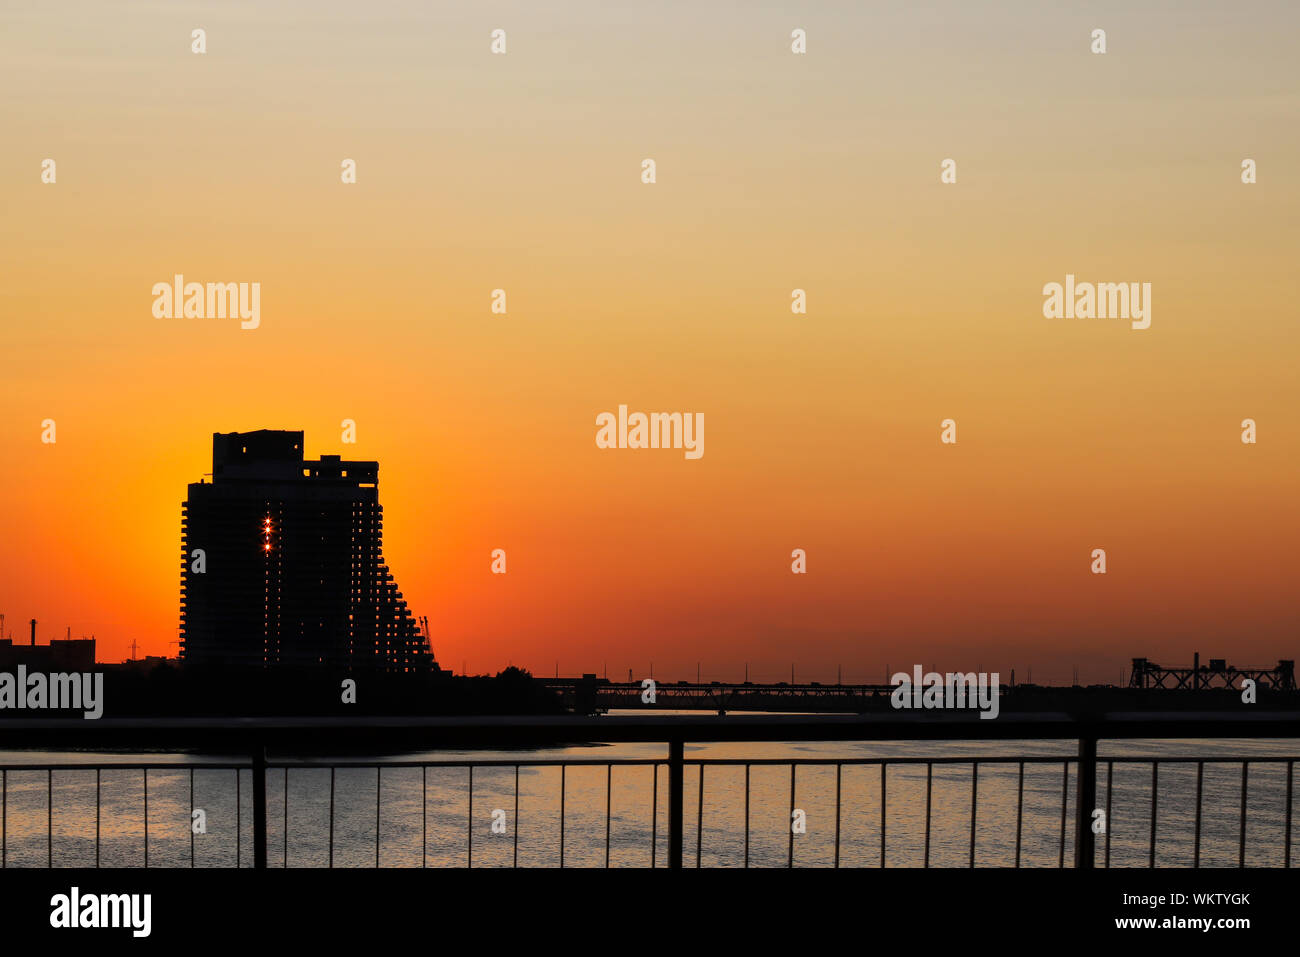 Silhouette d'un gratte-ciel et pont sur un fond coucher de soleil, sur la rivière dans une ville, Dnepropetrovsk, Ukraine, Ukraine. Banque D'Images